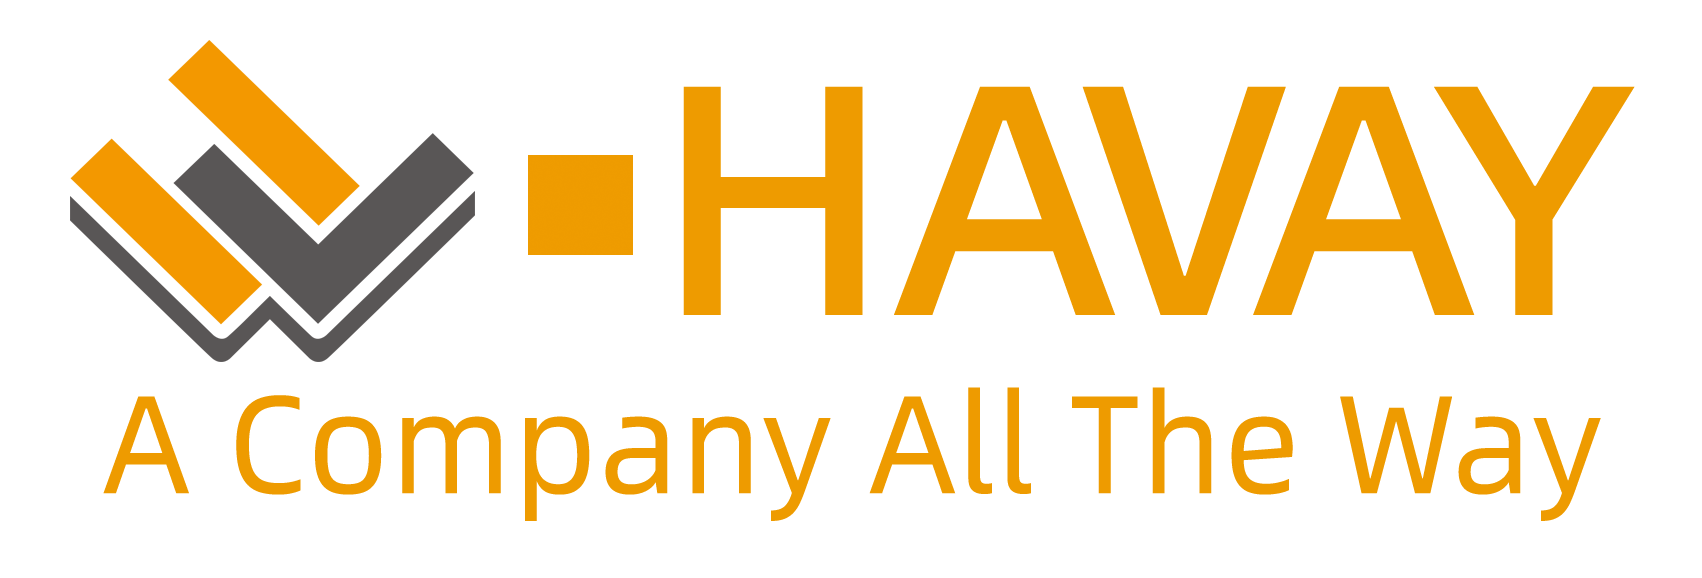 漢威logo英文